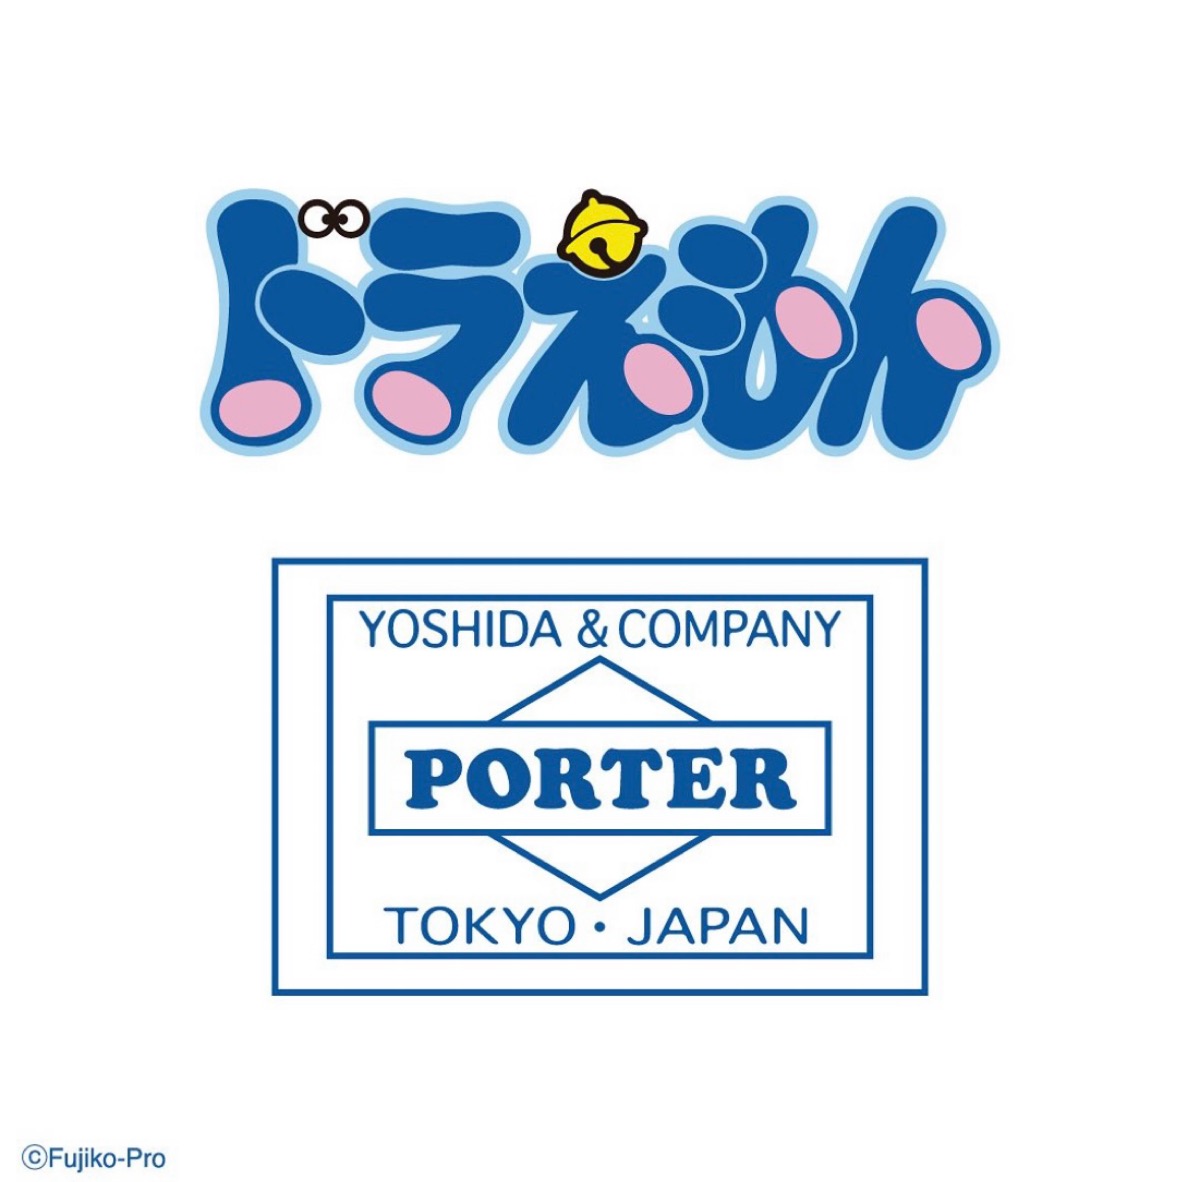 ドラえもん × PORTER コラボコレクション第2弾が国内12月1日より発売